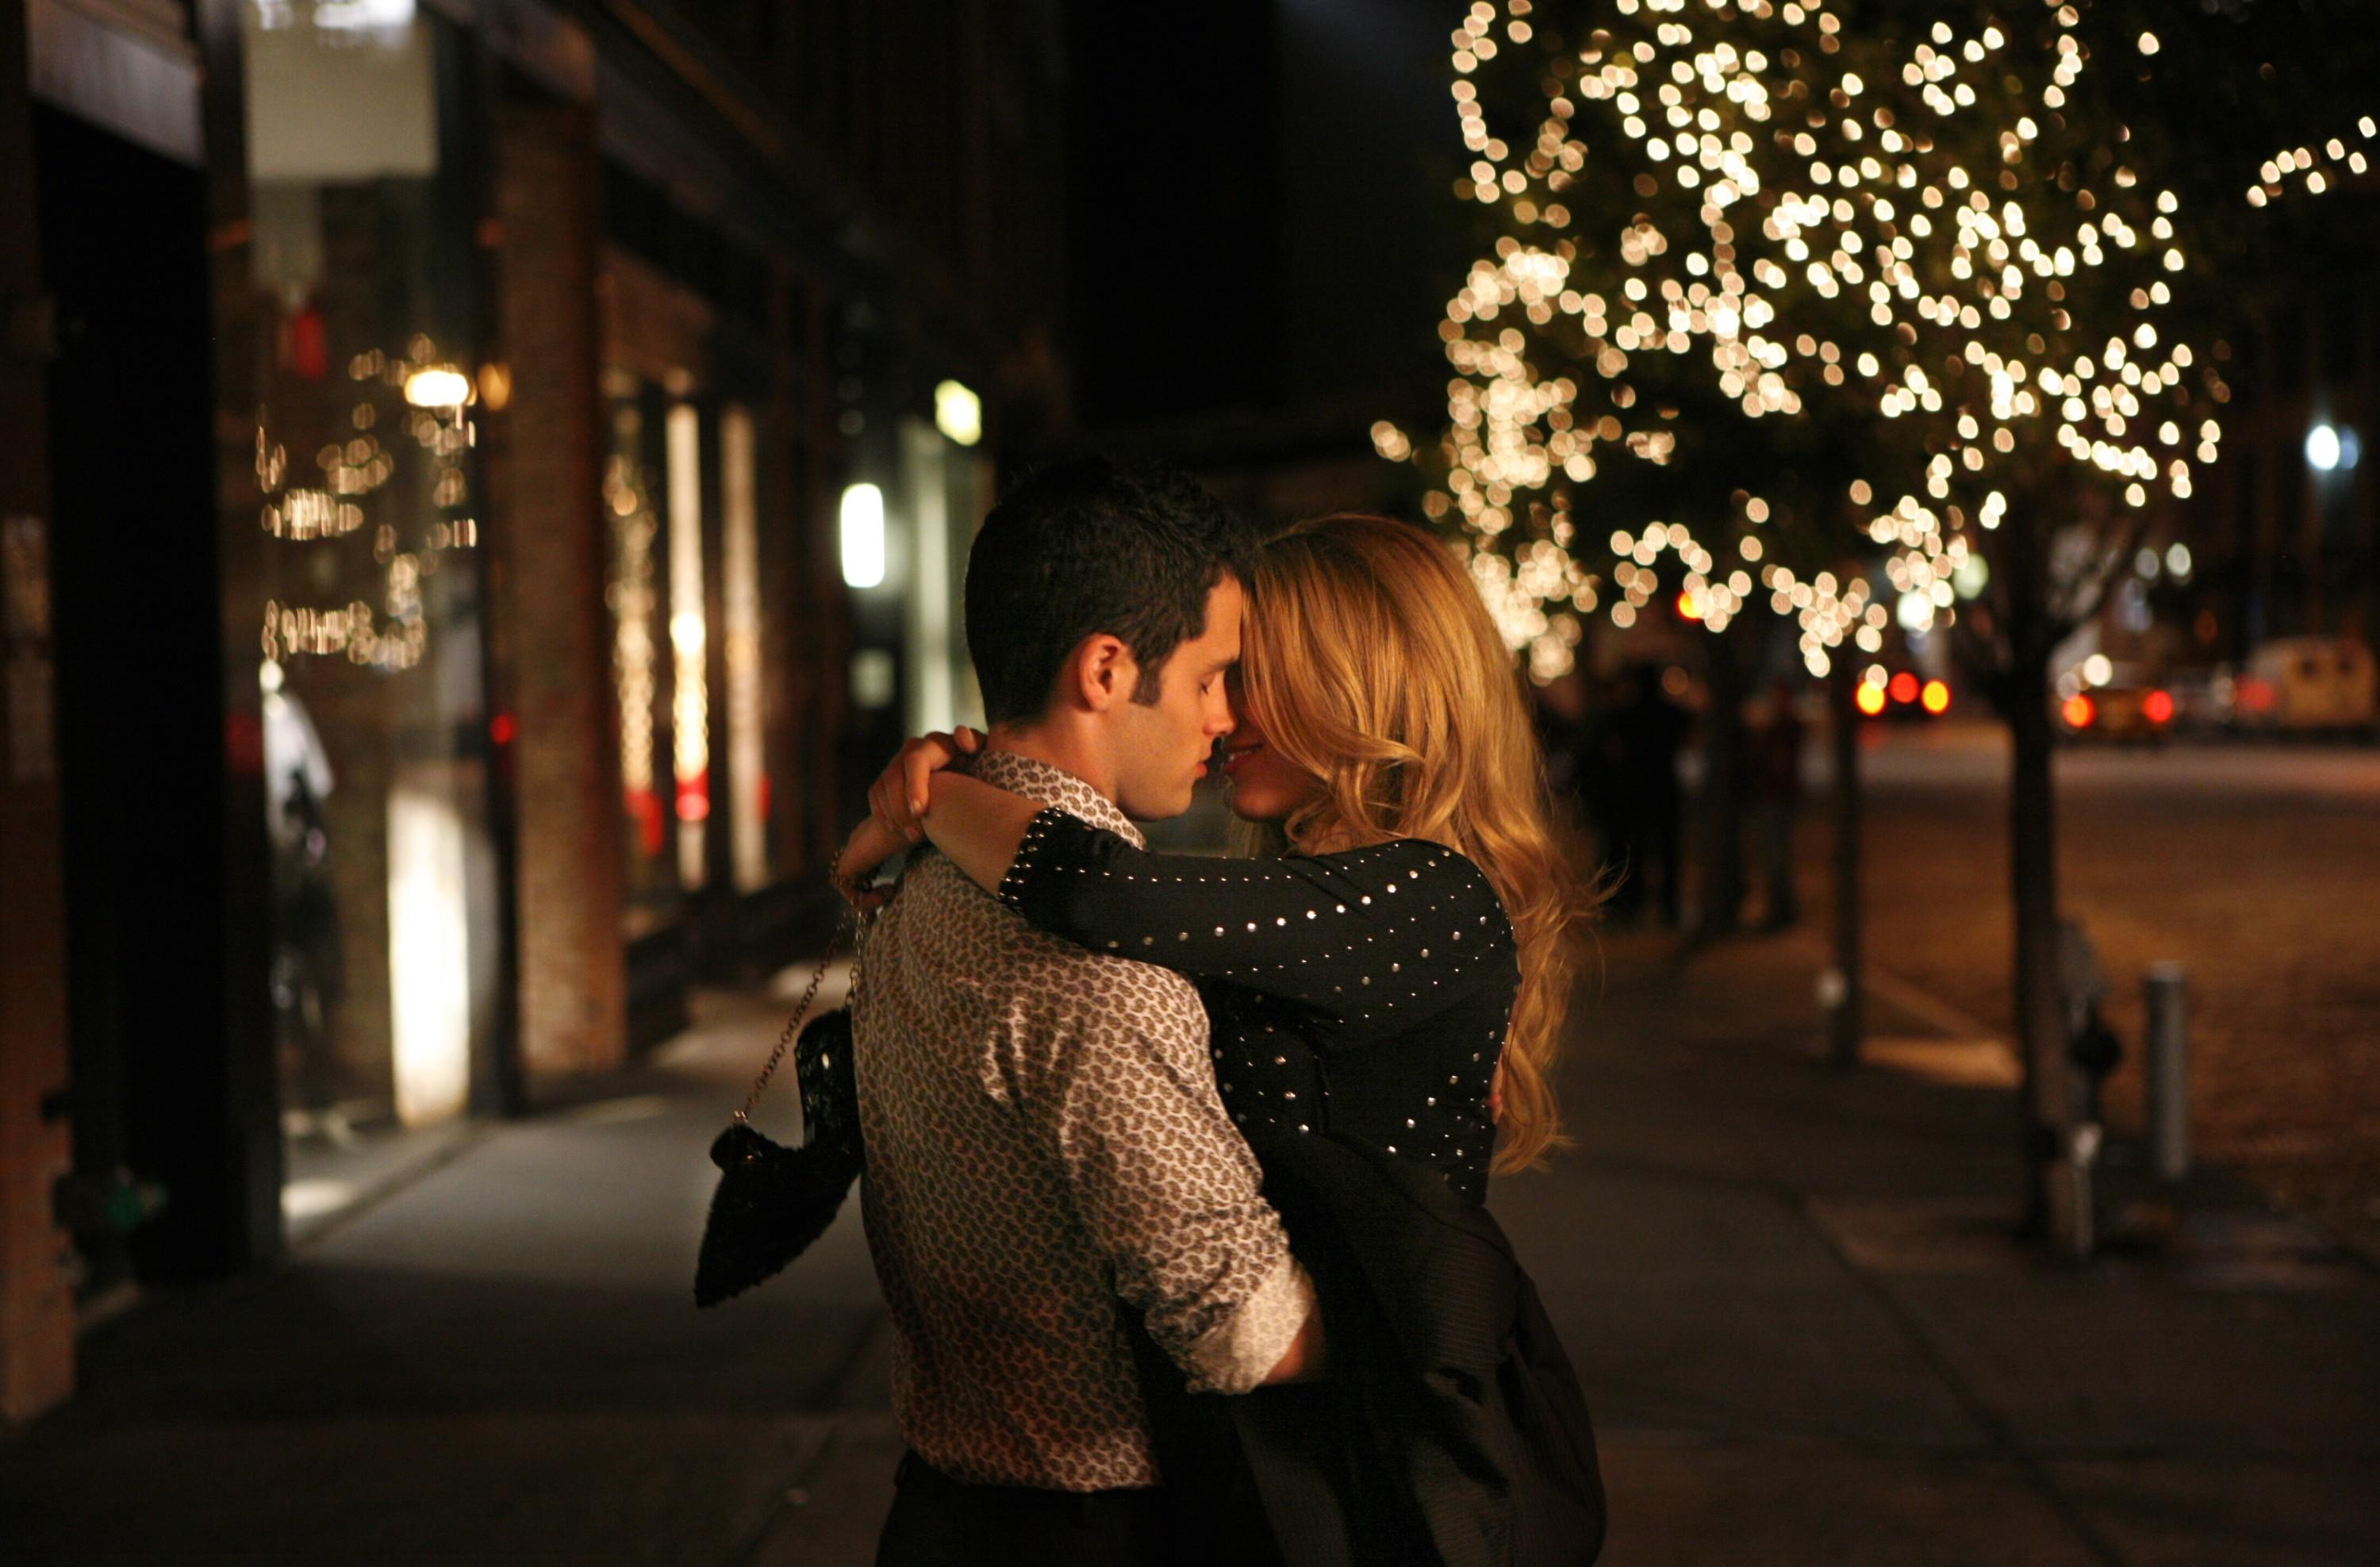 Обнял любимую ночью. Влюбленная пара вечером. Романтическая встреча влюбленных. Влюбленные на улице. Поцелуй вечером на улице.